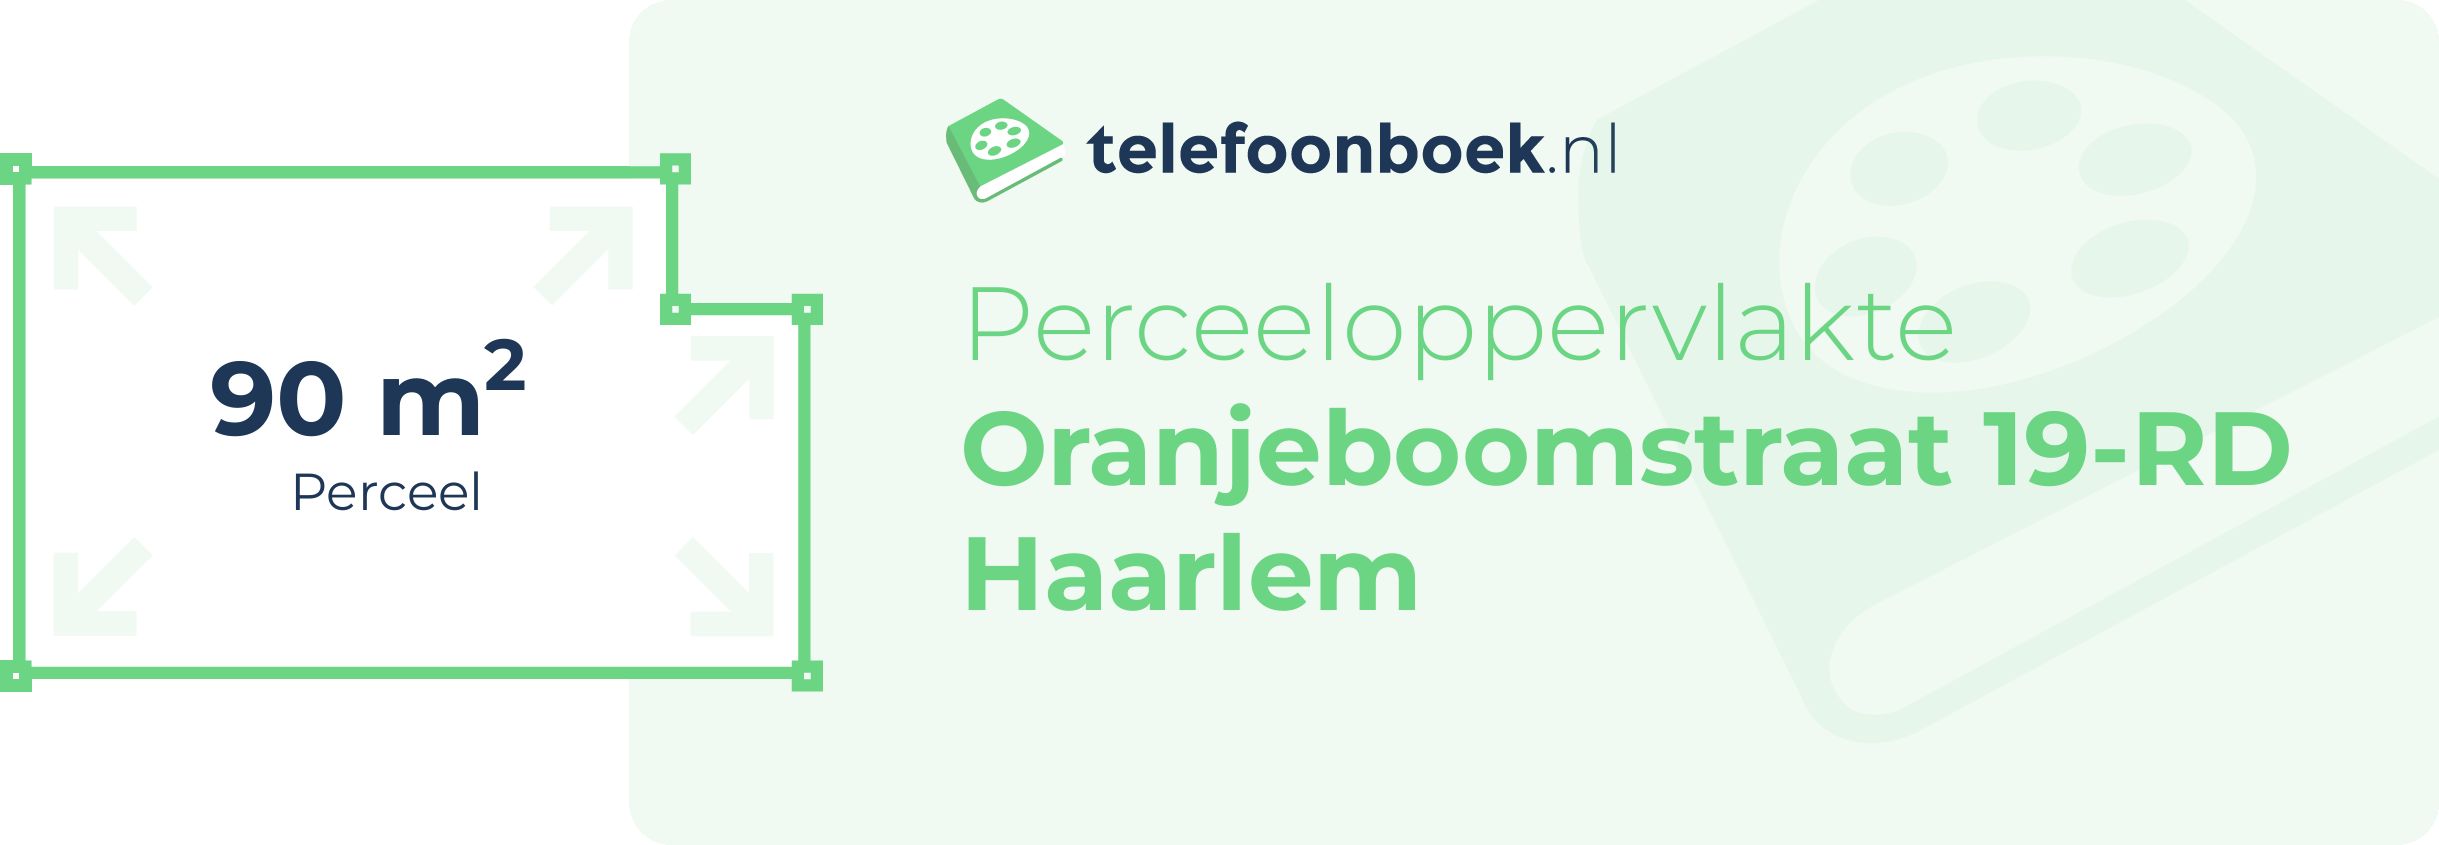 Perceeloppervlakte Oranjeboomstraat 19-RD Haarlem